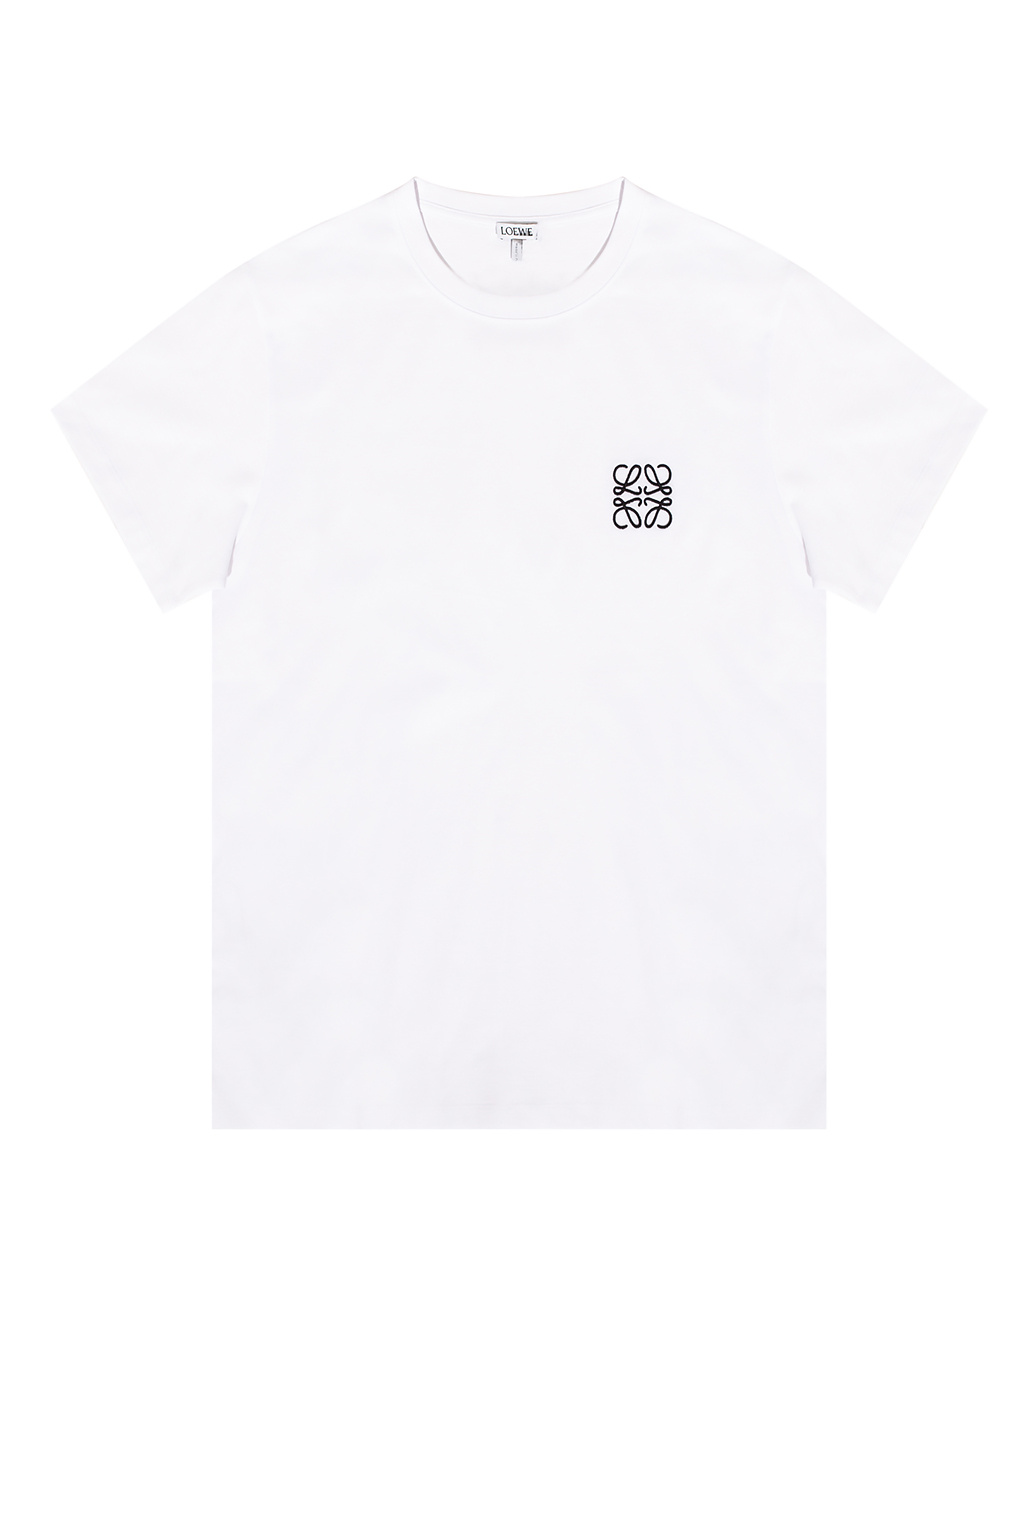 Loewe Logo Anagram white T-Shirt - LOEWE